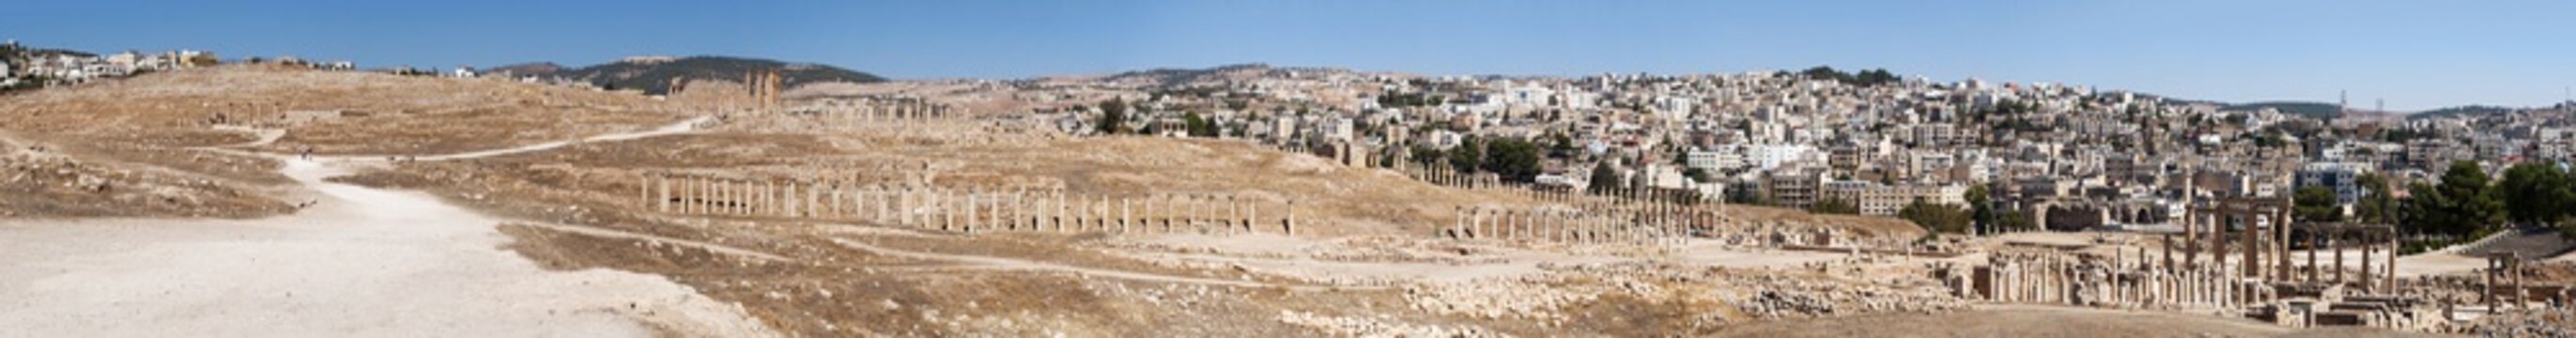 Giordania, 04/10/2013: le rovine della città romana di Gerasa, uno dei più grandi e meglio conservati siti di architettura romana al mondo, e lo skyline della moderna Jerash